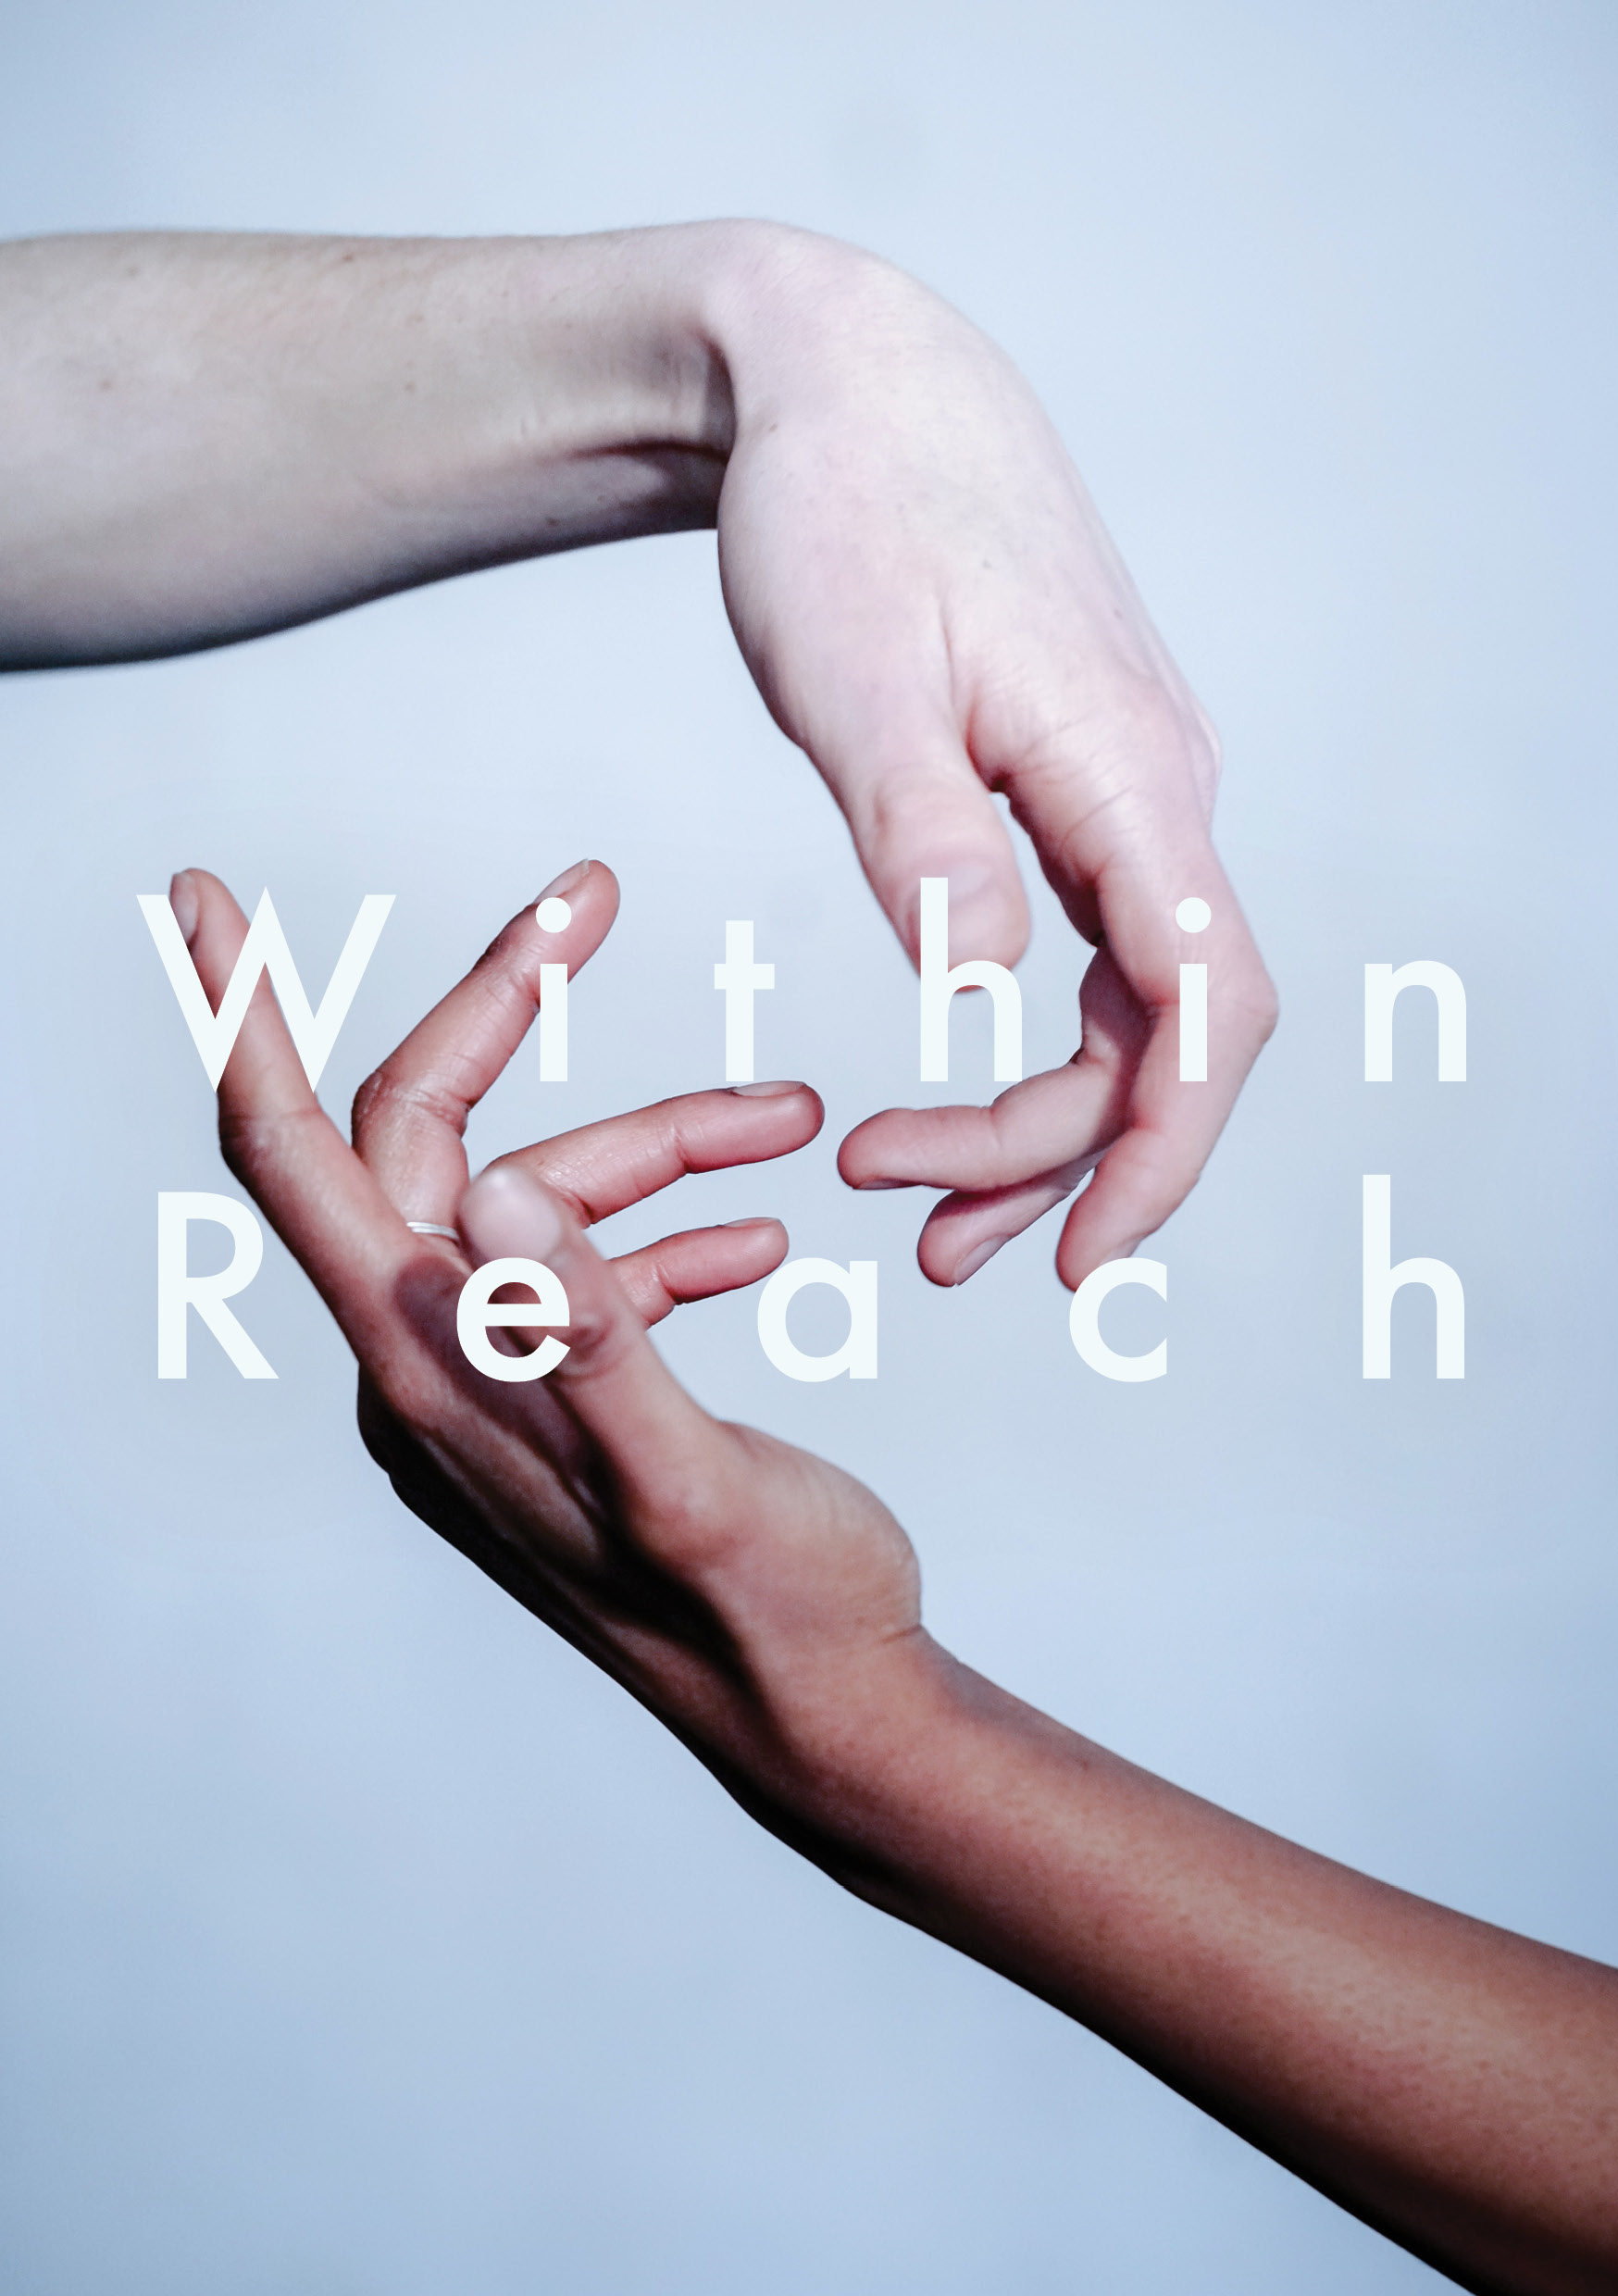 Within Reach image © Leon Puplett